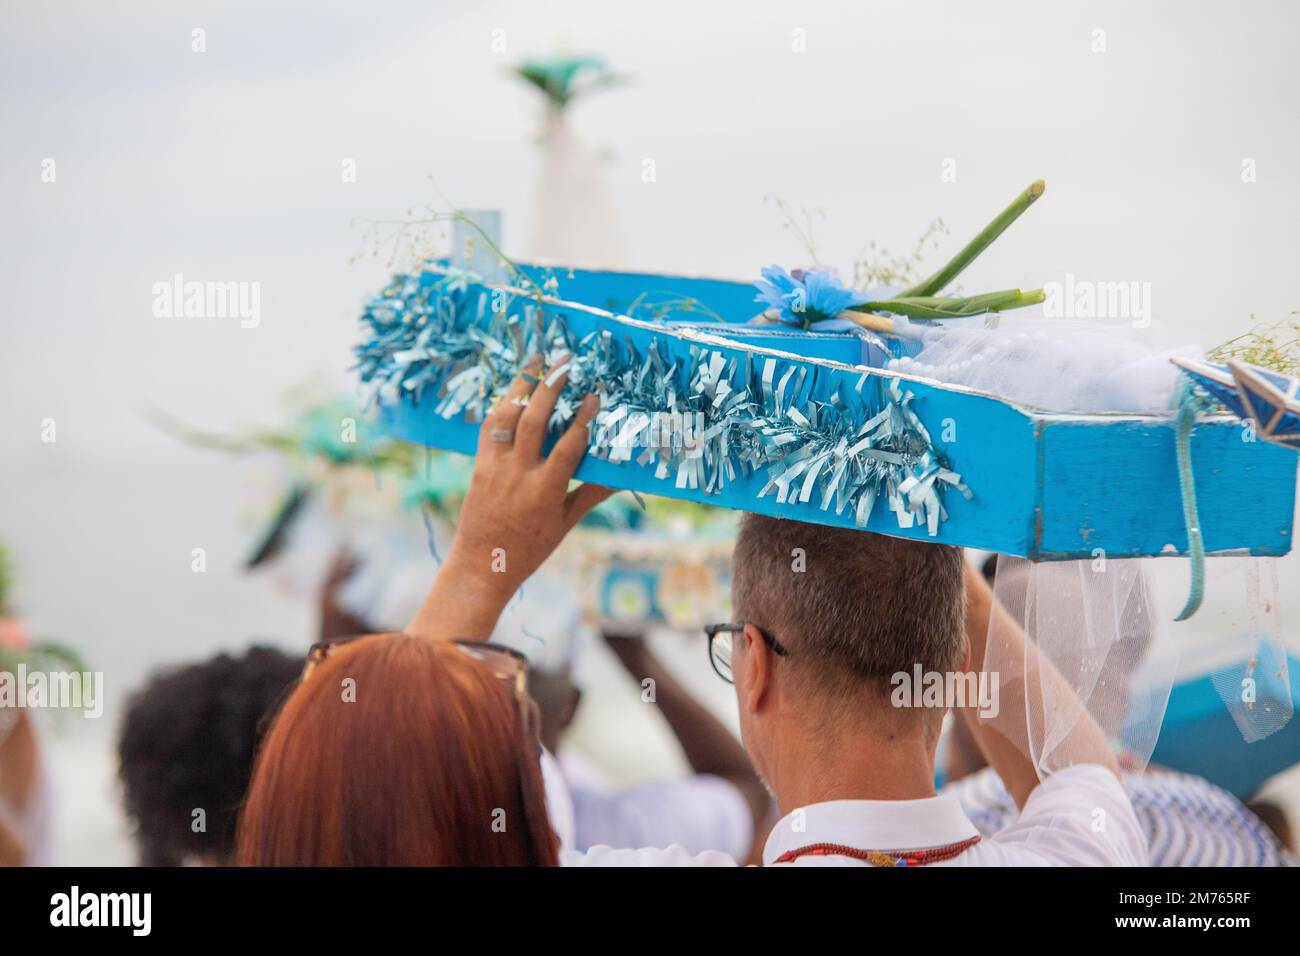 bateau avec offrandes à iemanja, pendant une fête à la plage de copacabana. Banque D'Images